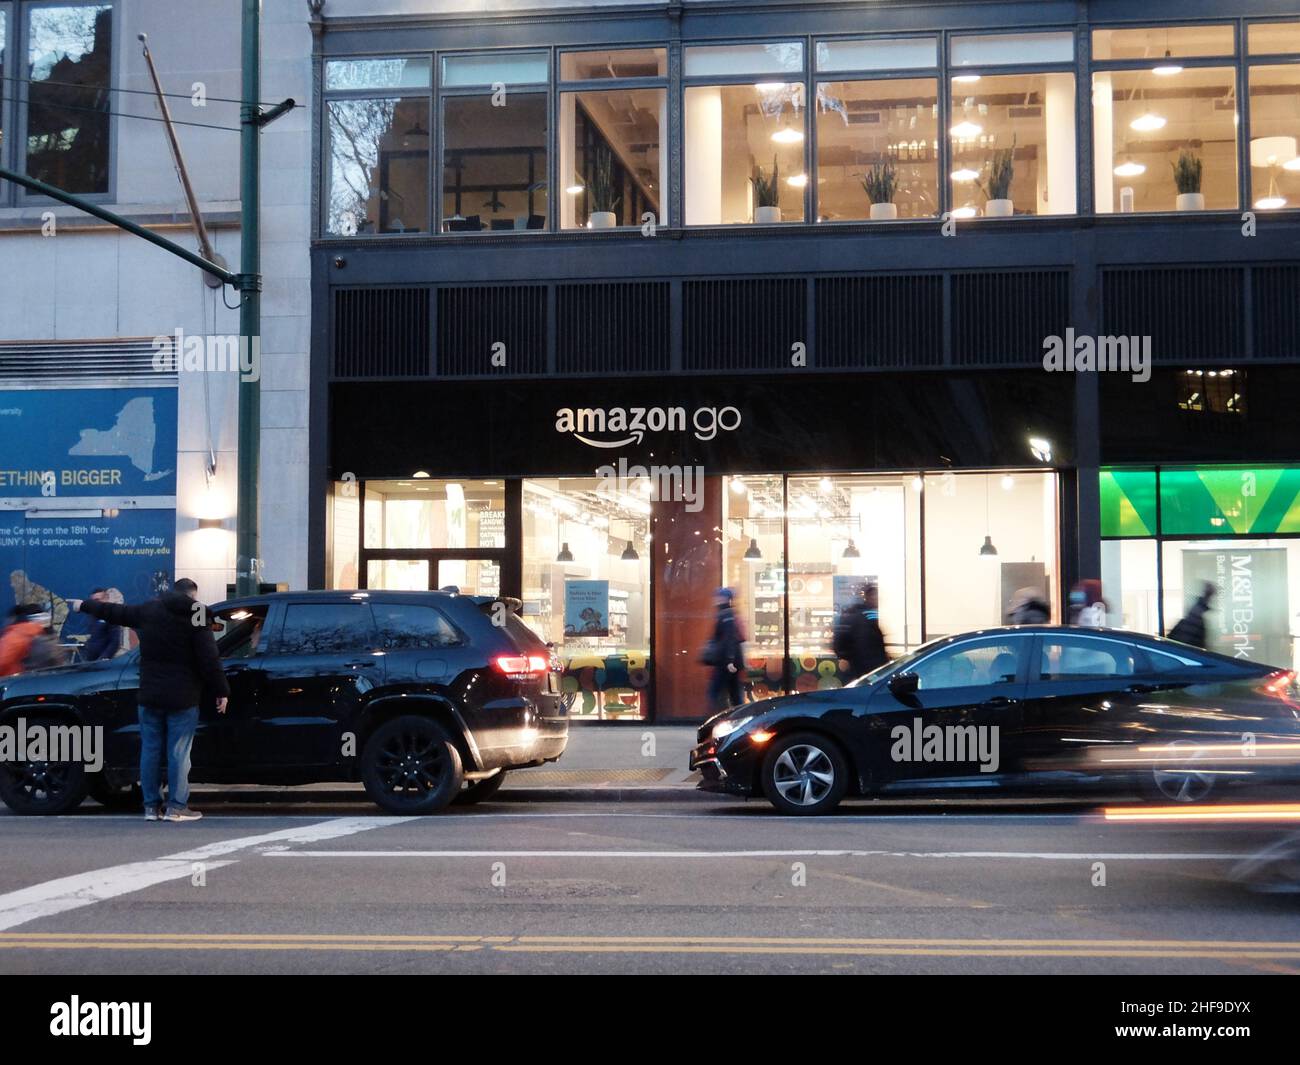 Amazon Go store in New York Stock Photo